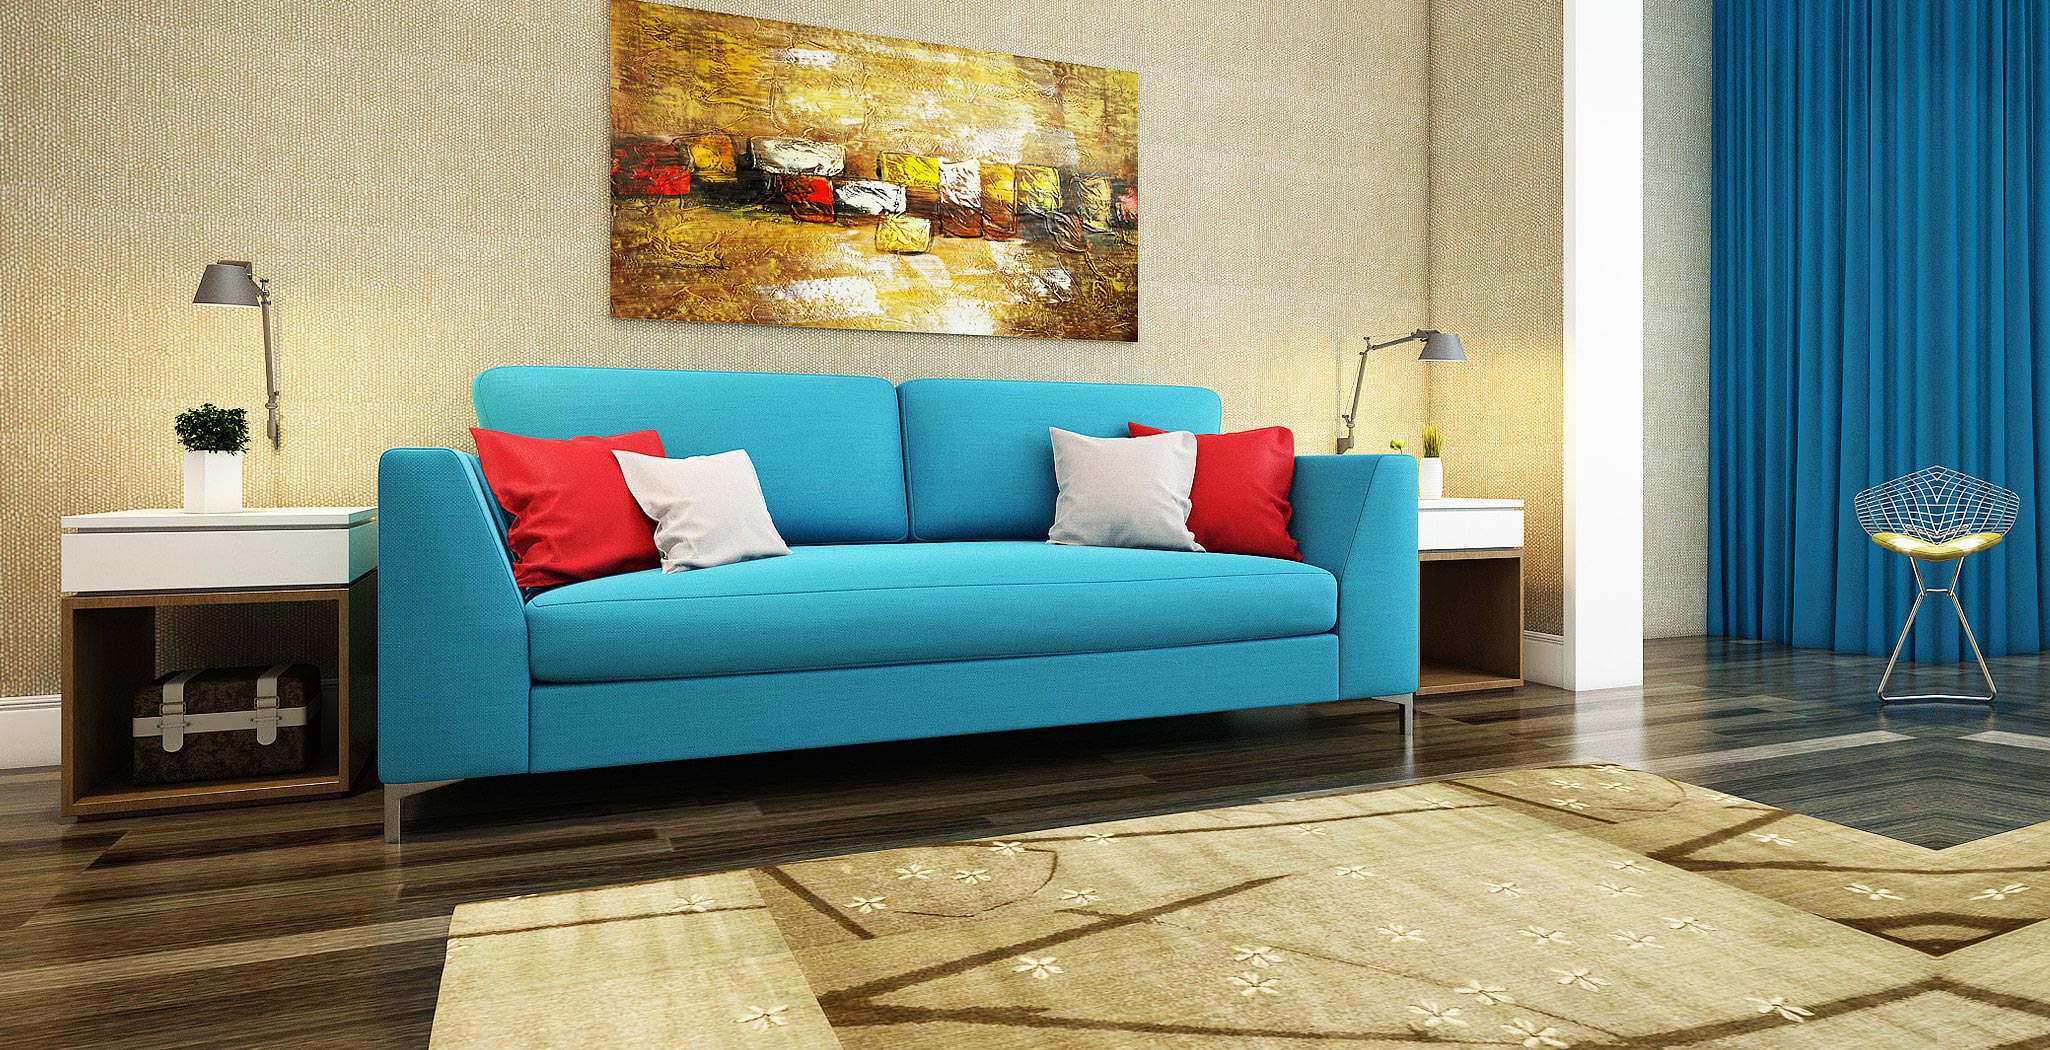 royal sofa furniture gallery 5